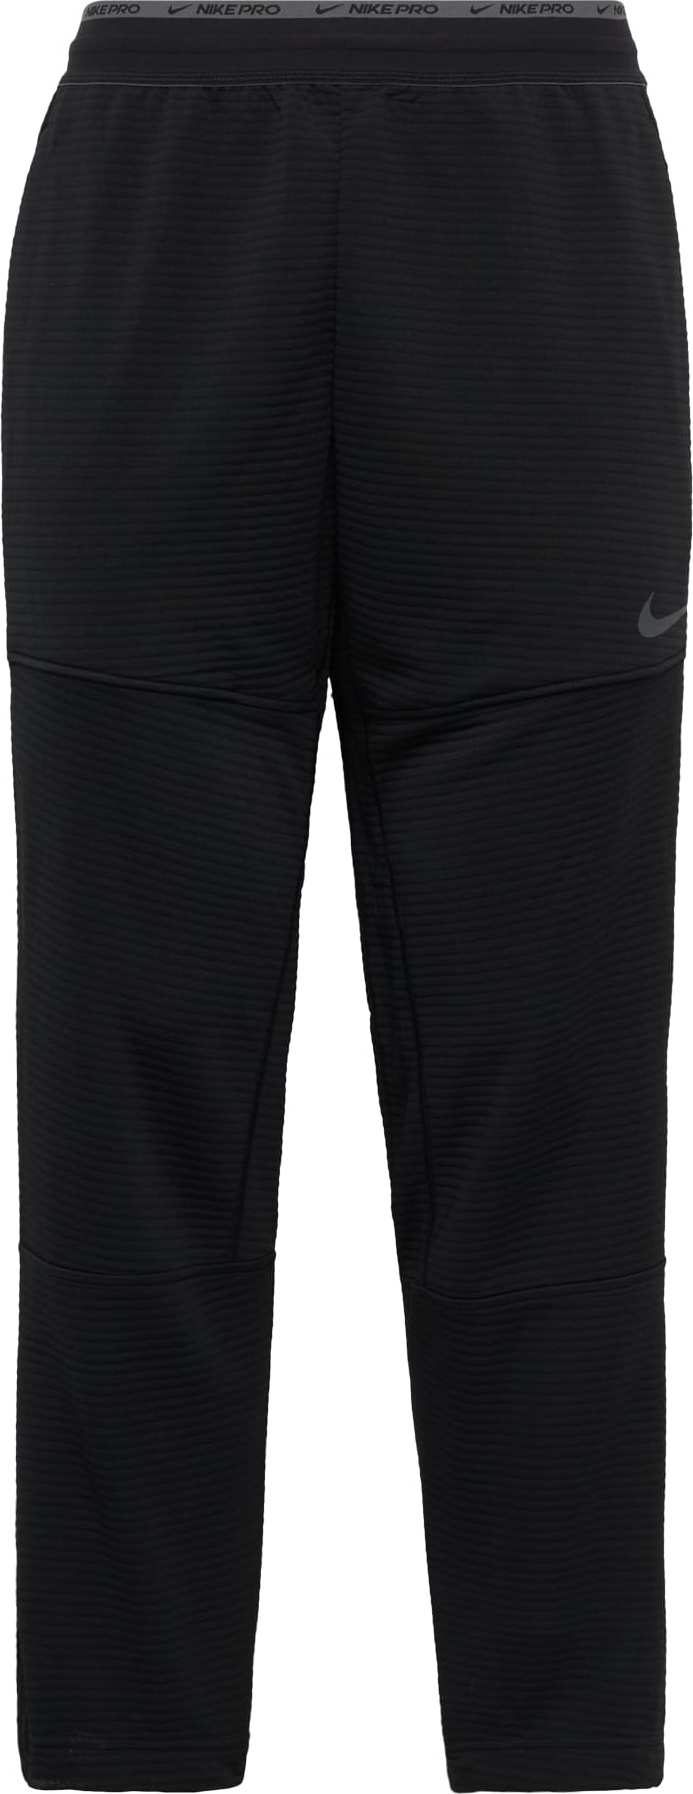 Sportovní kalhoty 'Pro' Nike antracitová / černá